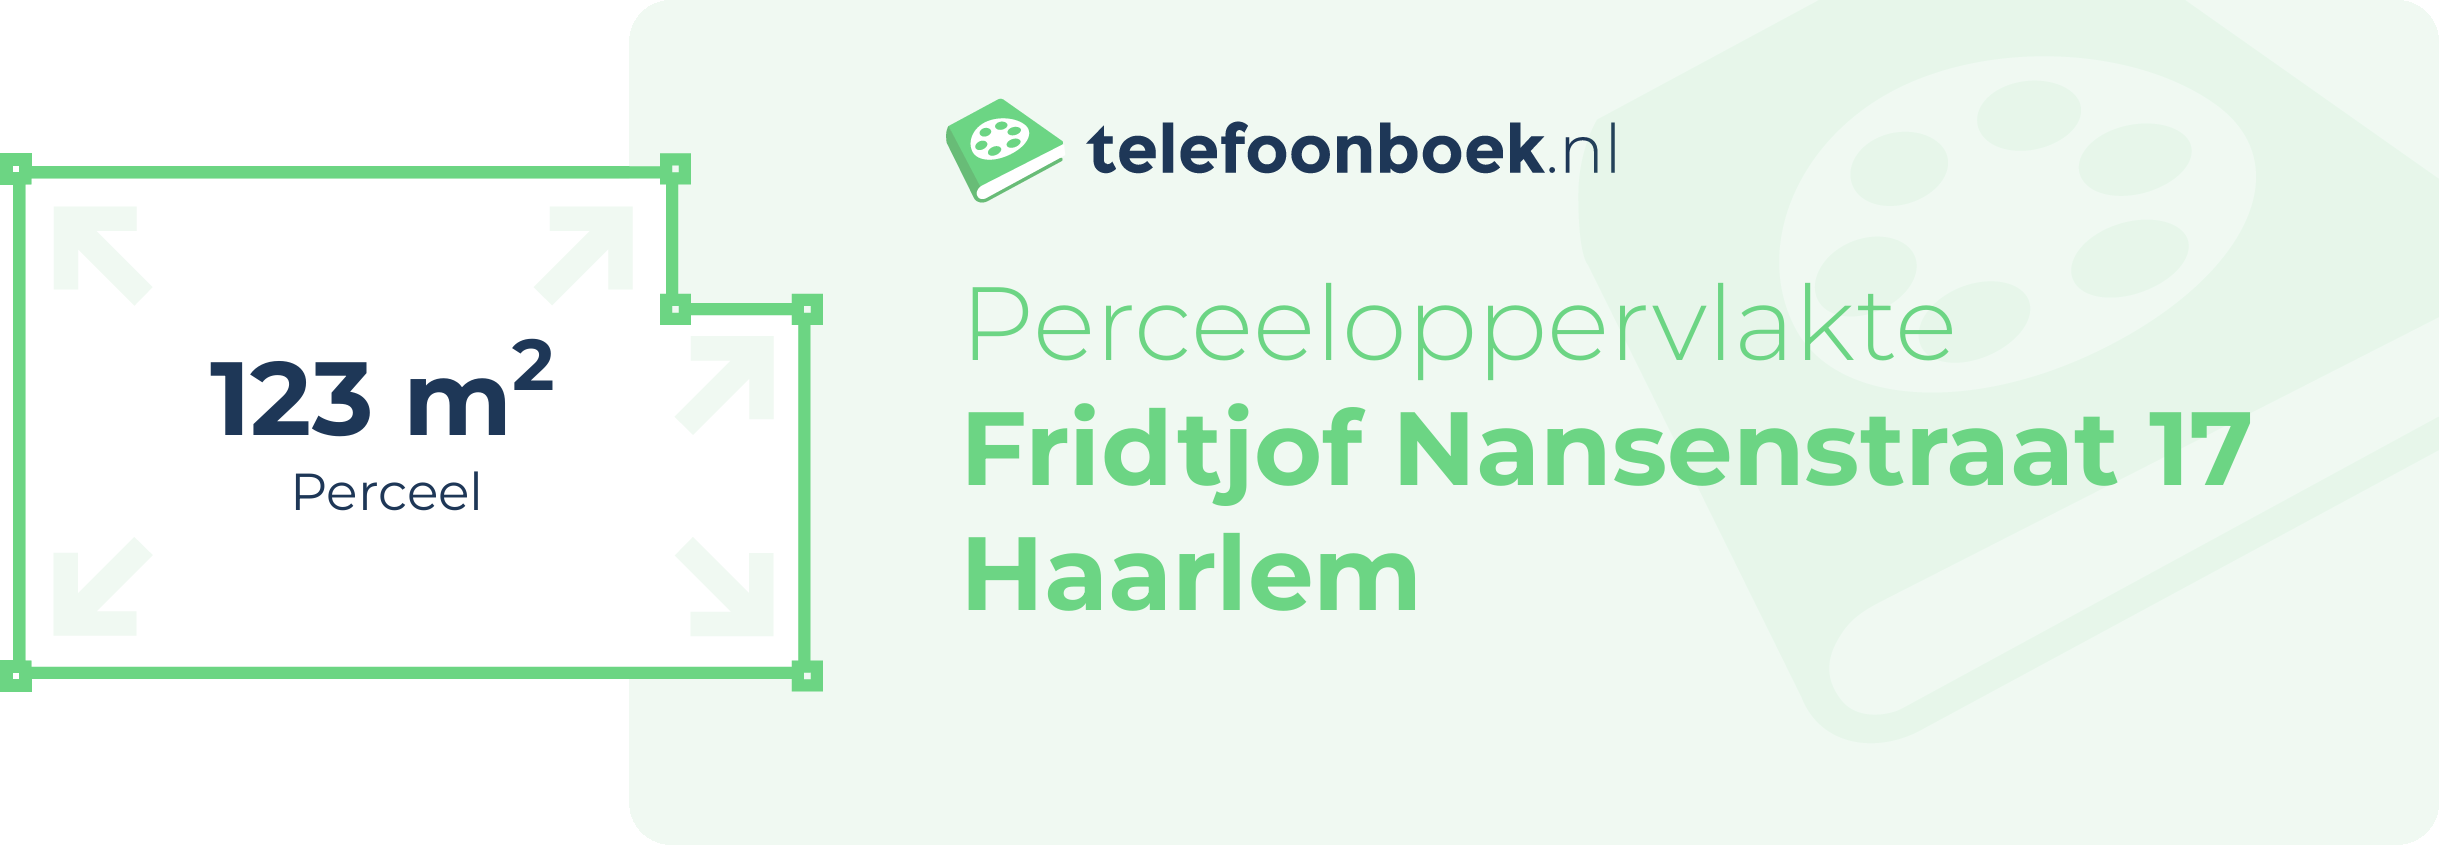 Perceeloppervlakte Fridtjof Nansenstraat 17 Haarlem